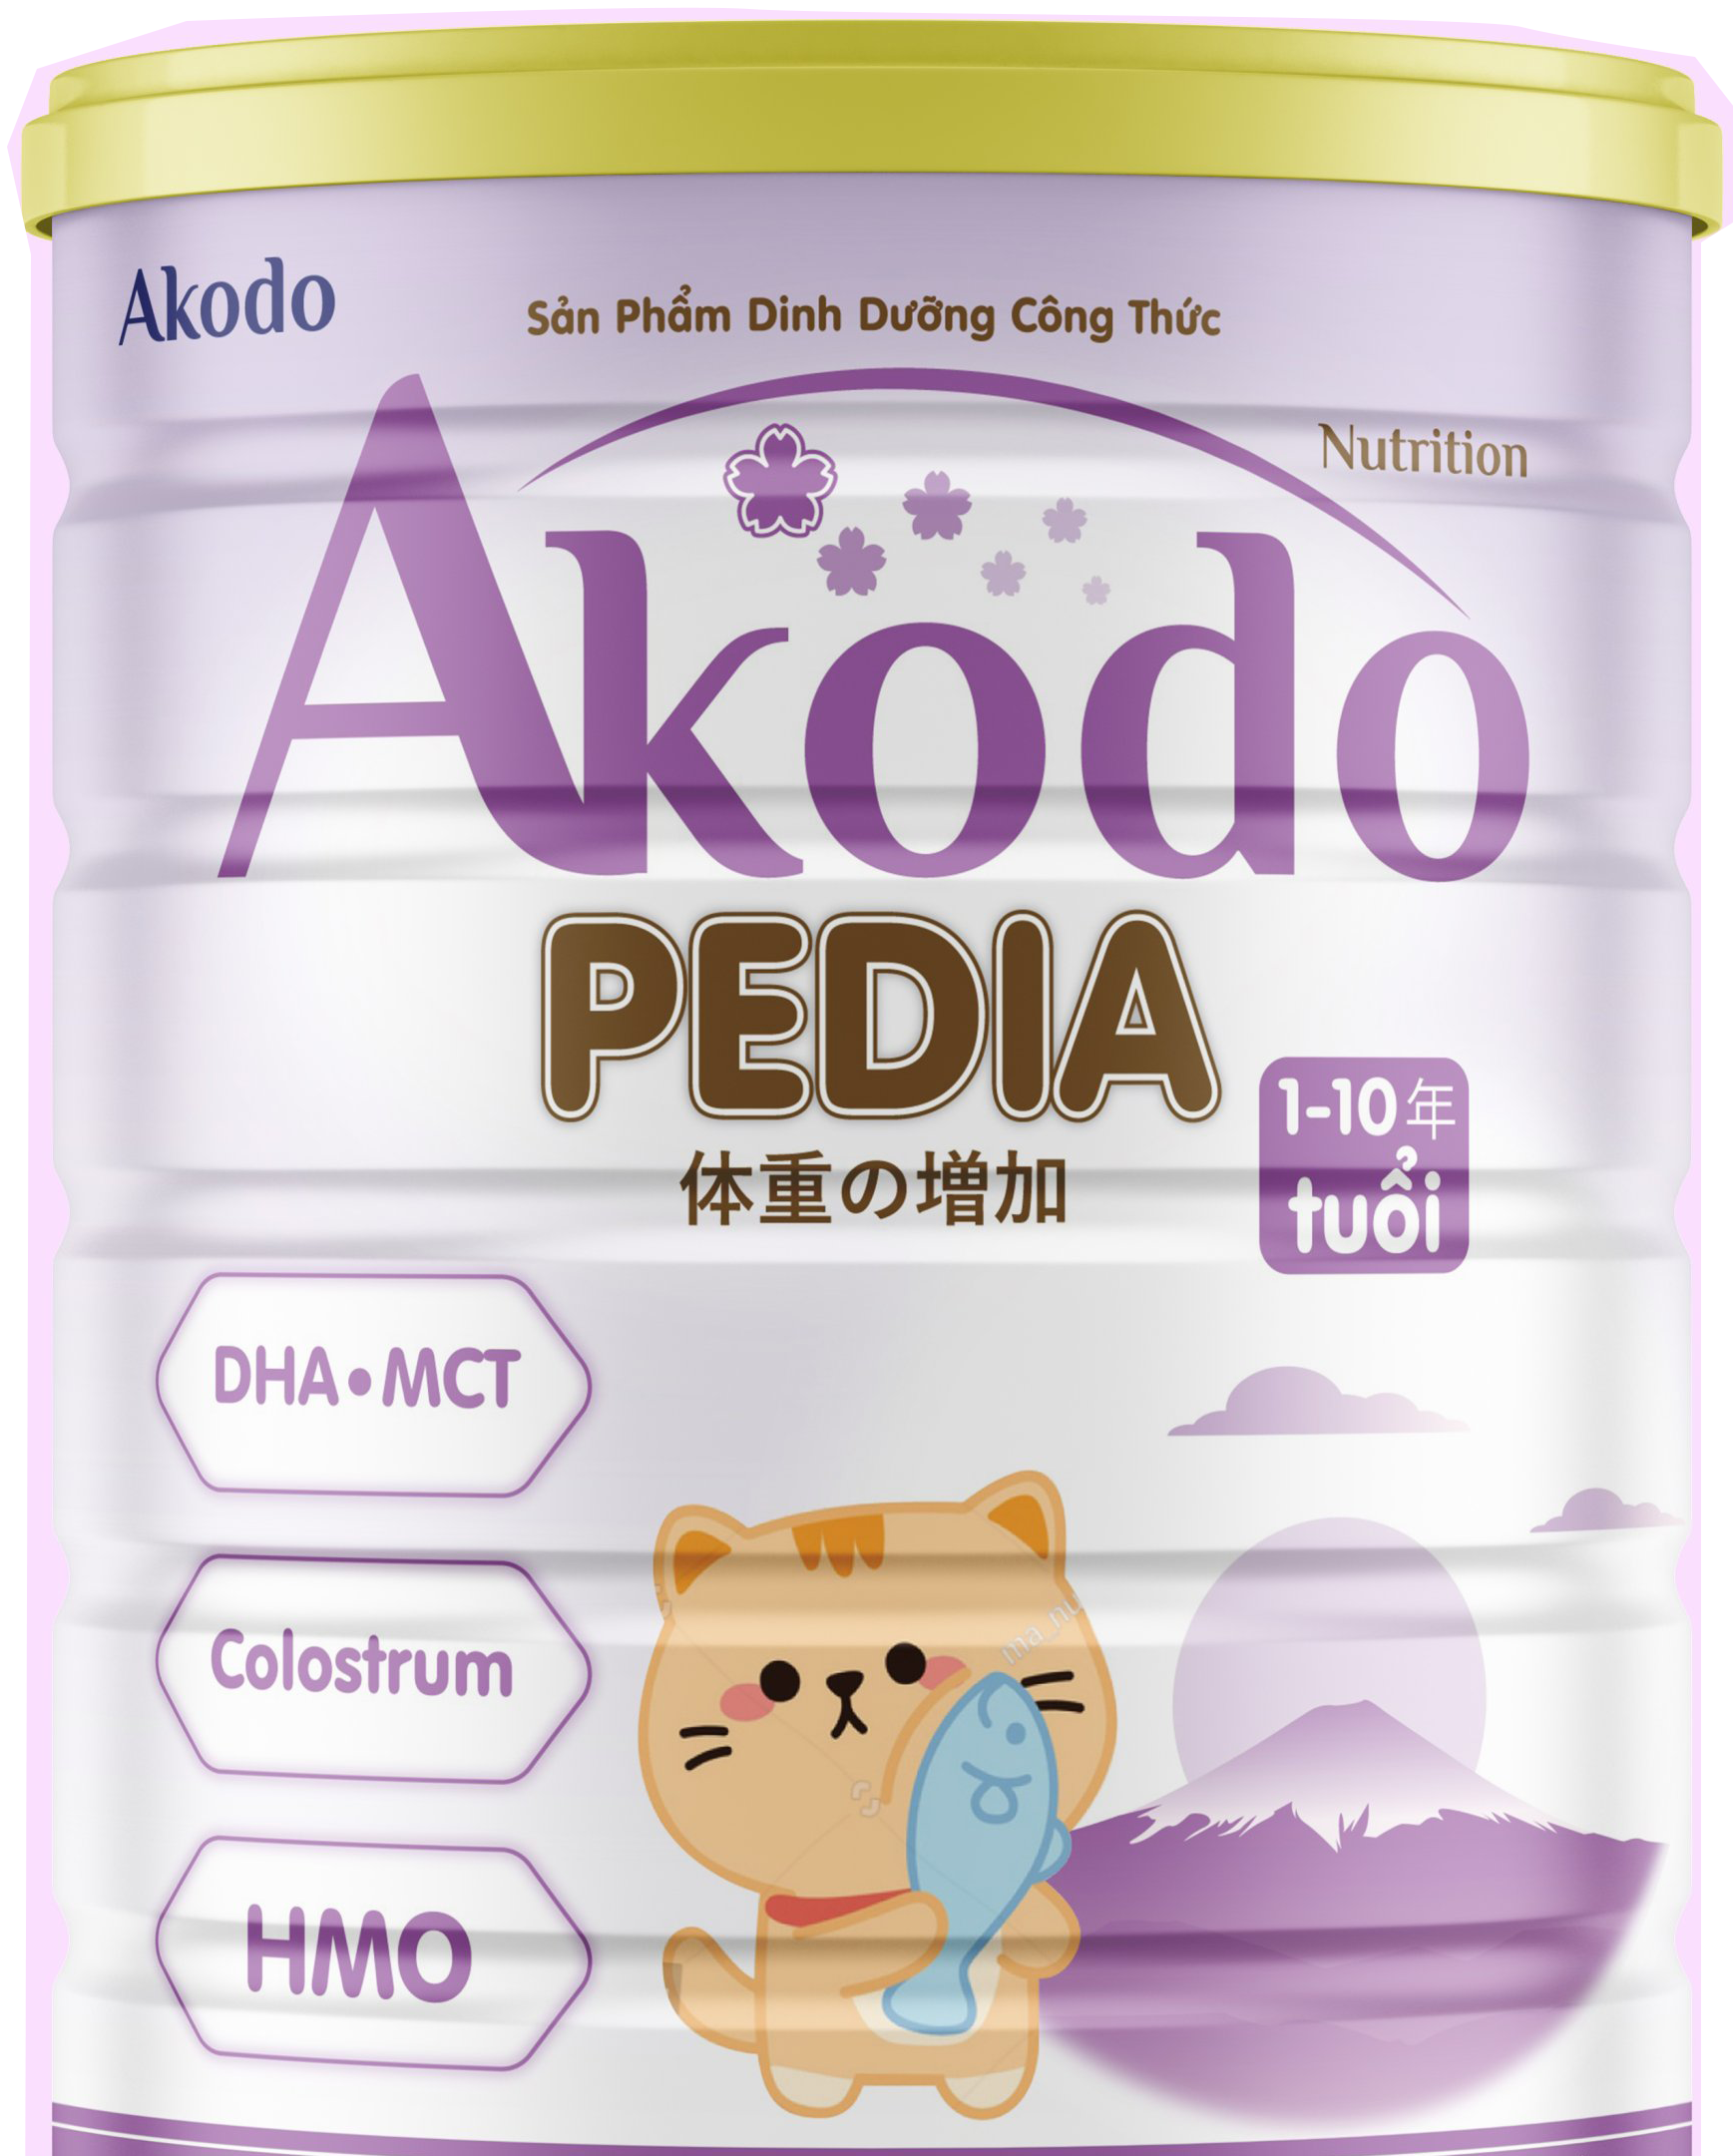 Sữa Akodo Pedia dành cho bé từ 1-10 tuổi - 400g